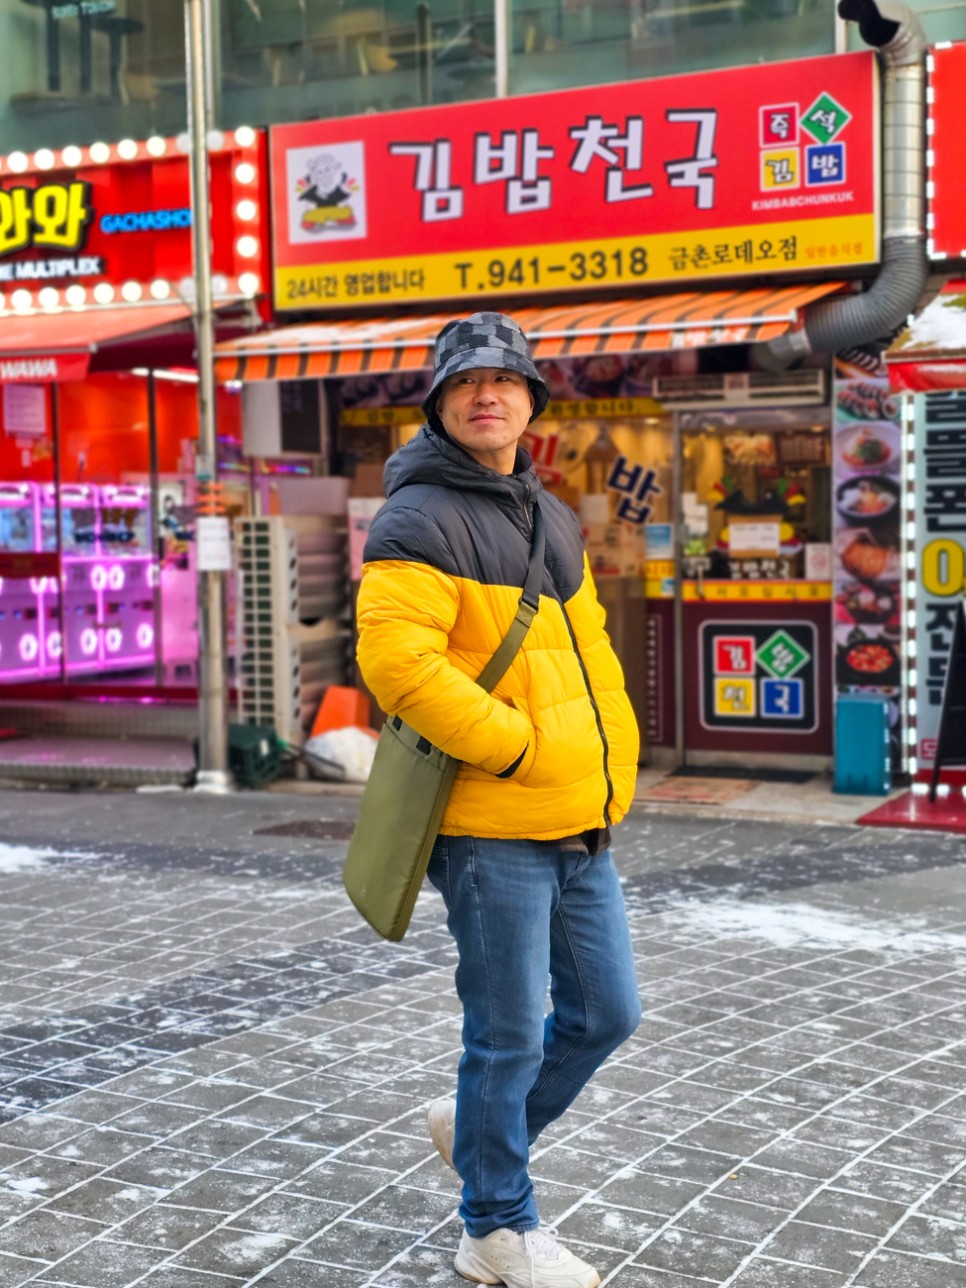 스타일리쉬 숄더백 노트북 가방 & 버킷햇 모자 플레이언으로 겨울 코디 완성!